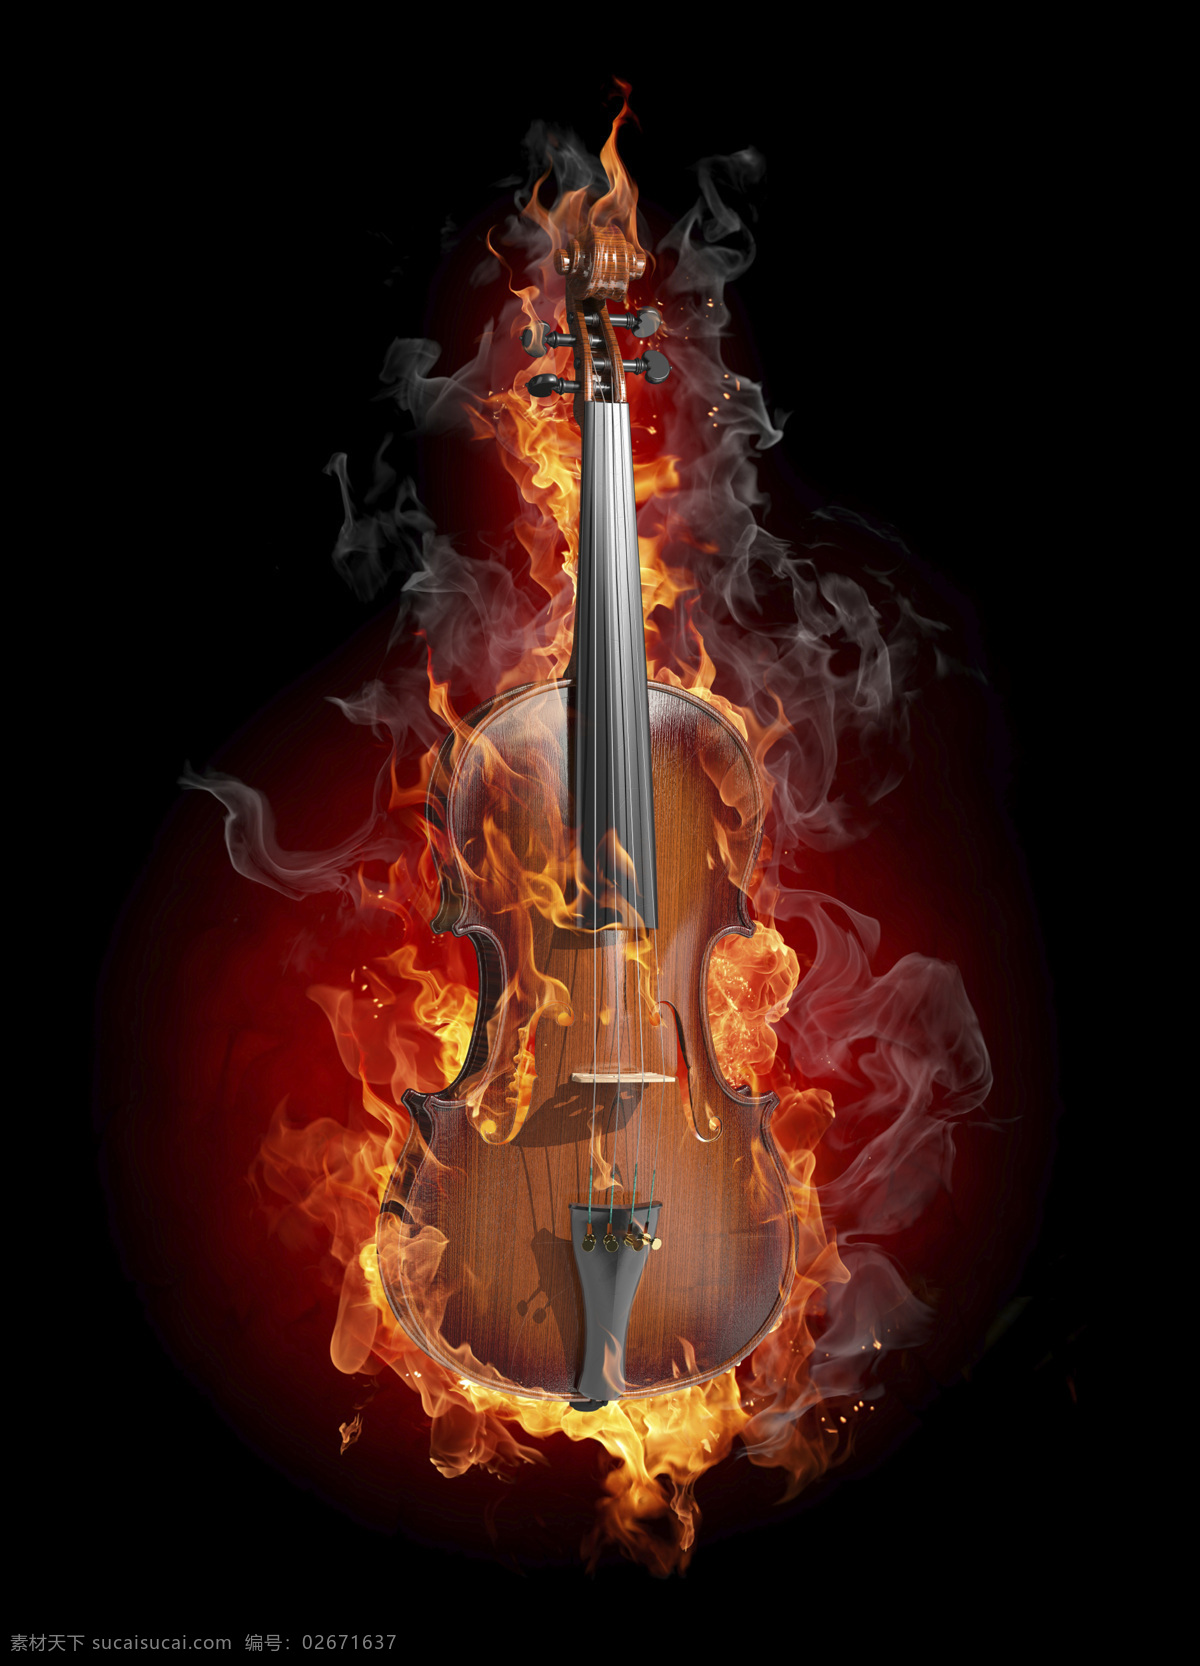 吉他高清 火焰 高清 暗红色 激情 吉他 燃烧 设计素材